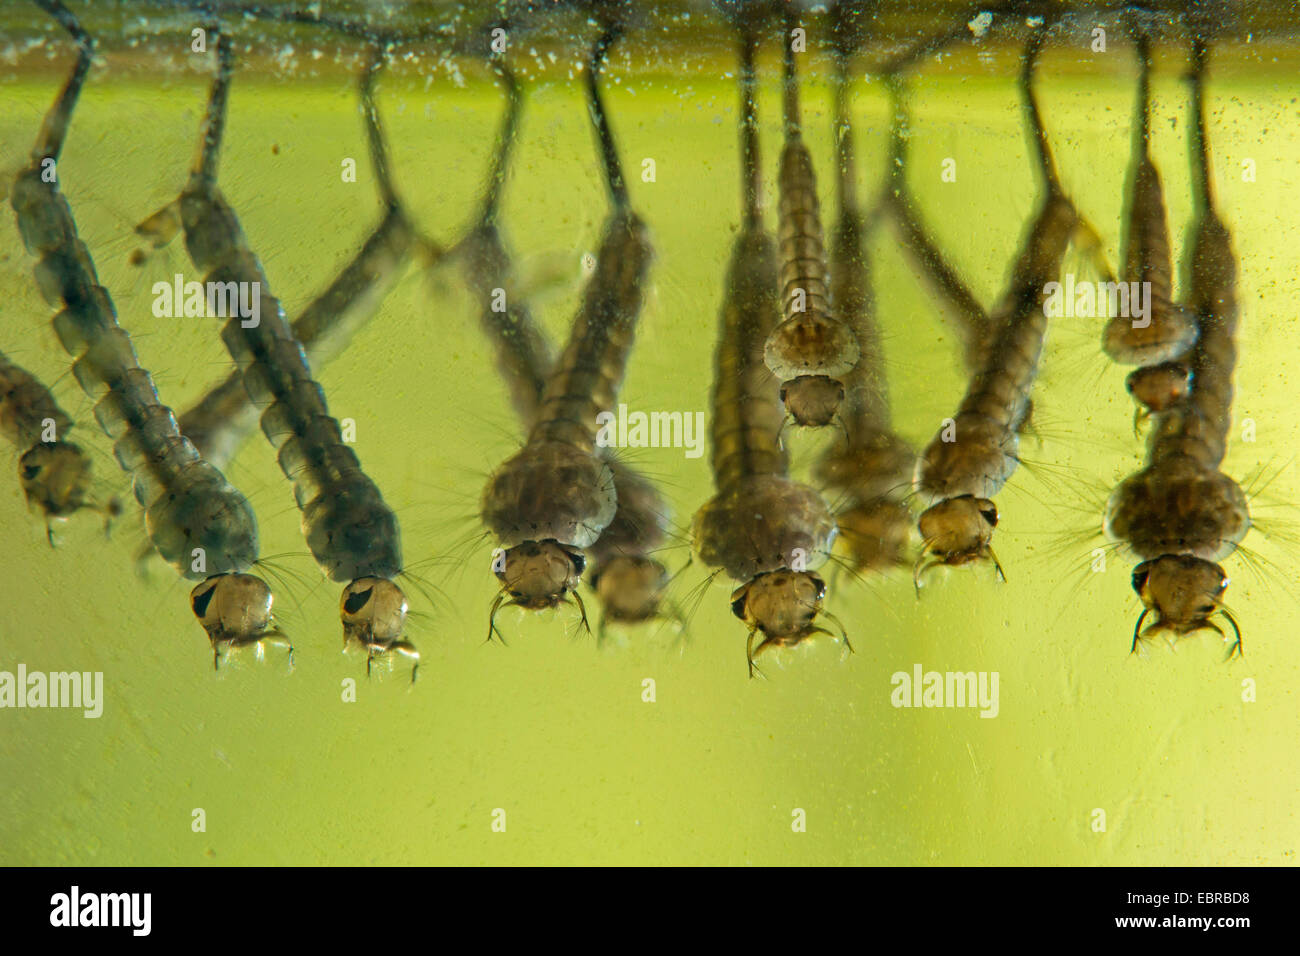 Les moustiques, les moucherons (Culicidae), larves, fixé en dessous de la surface de l'eau, de l'Allemagne Banque D'Images